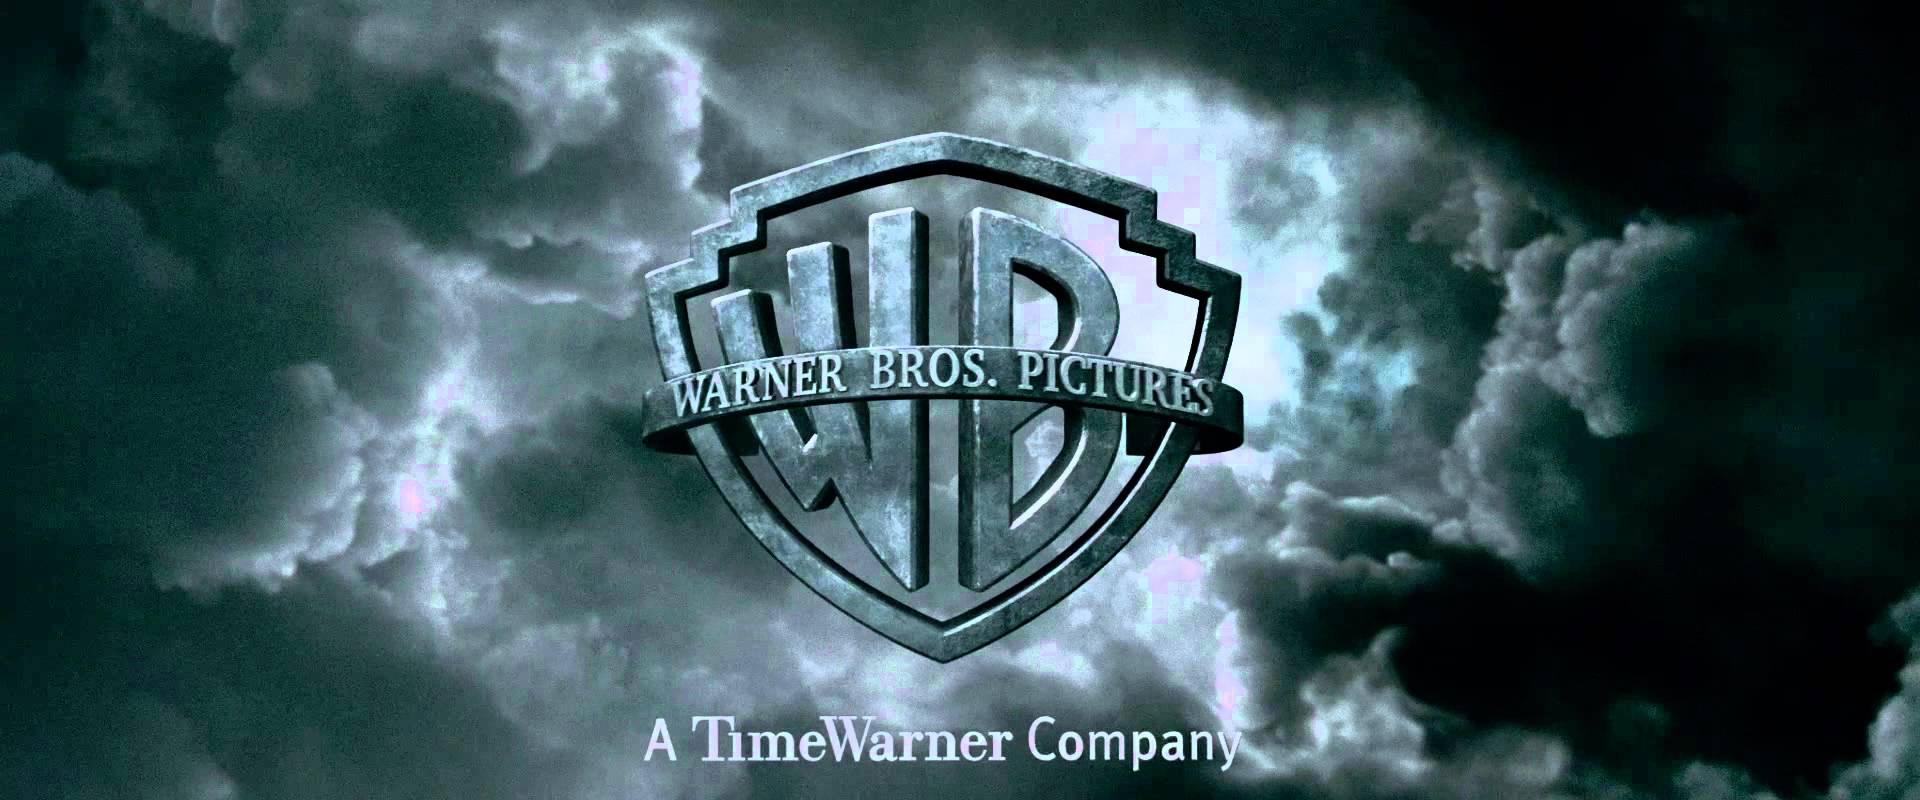 Harry Potter Warner Bros. Logo - Harry potter warner bros Logos